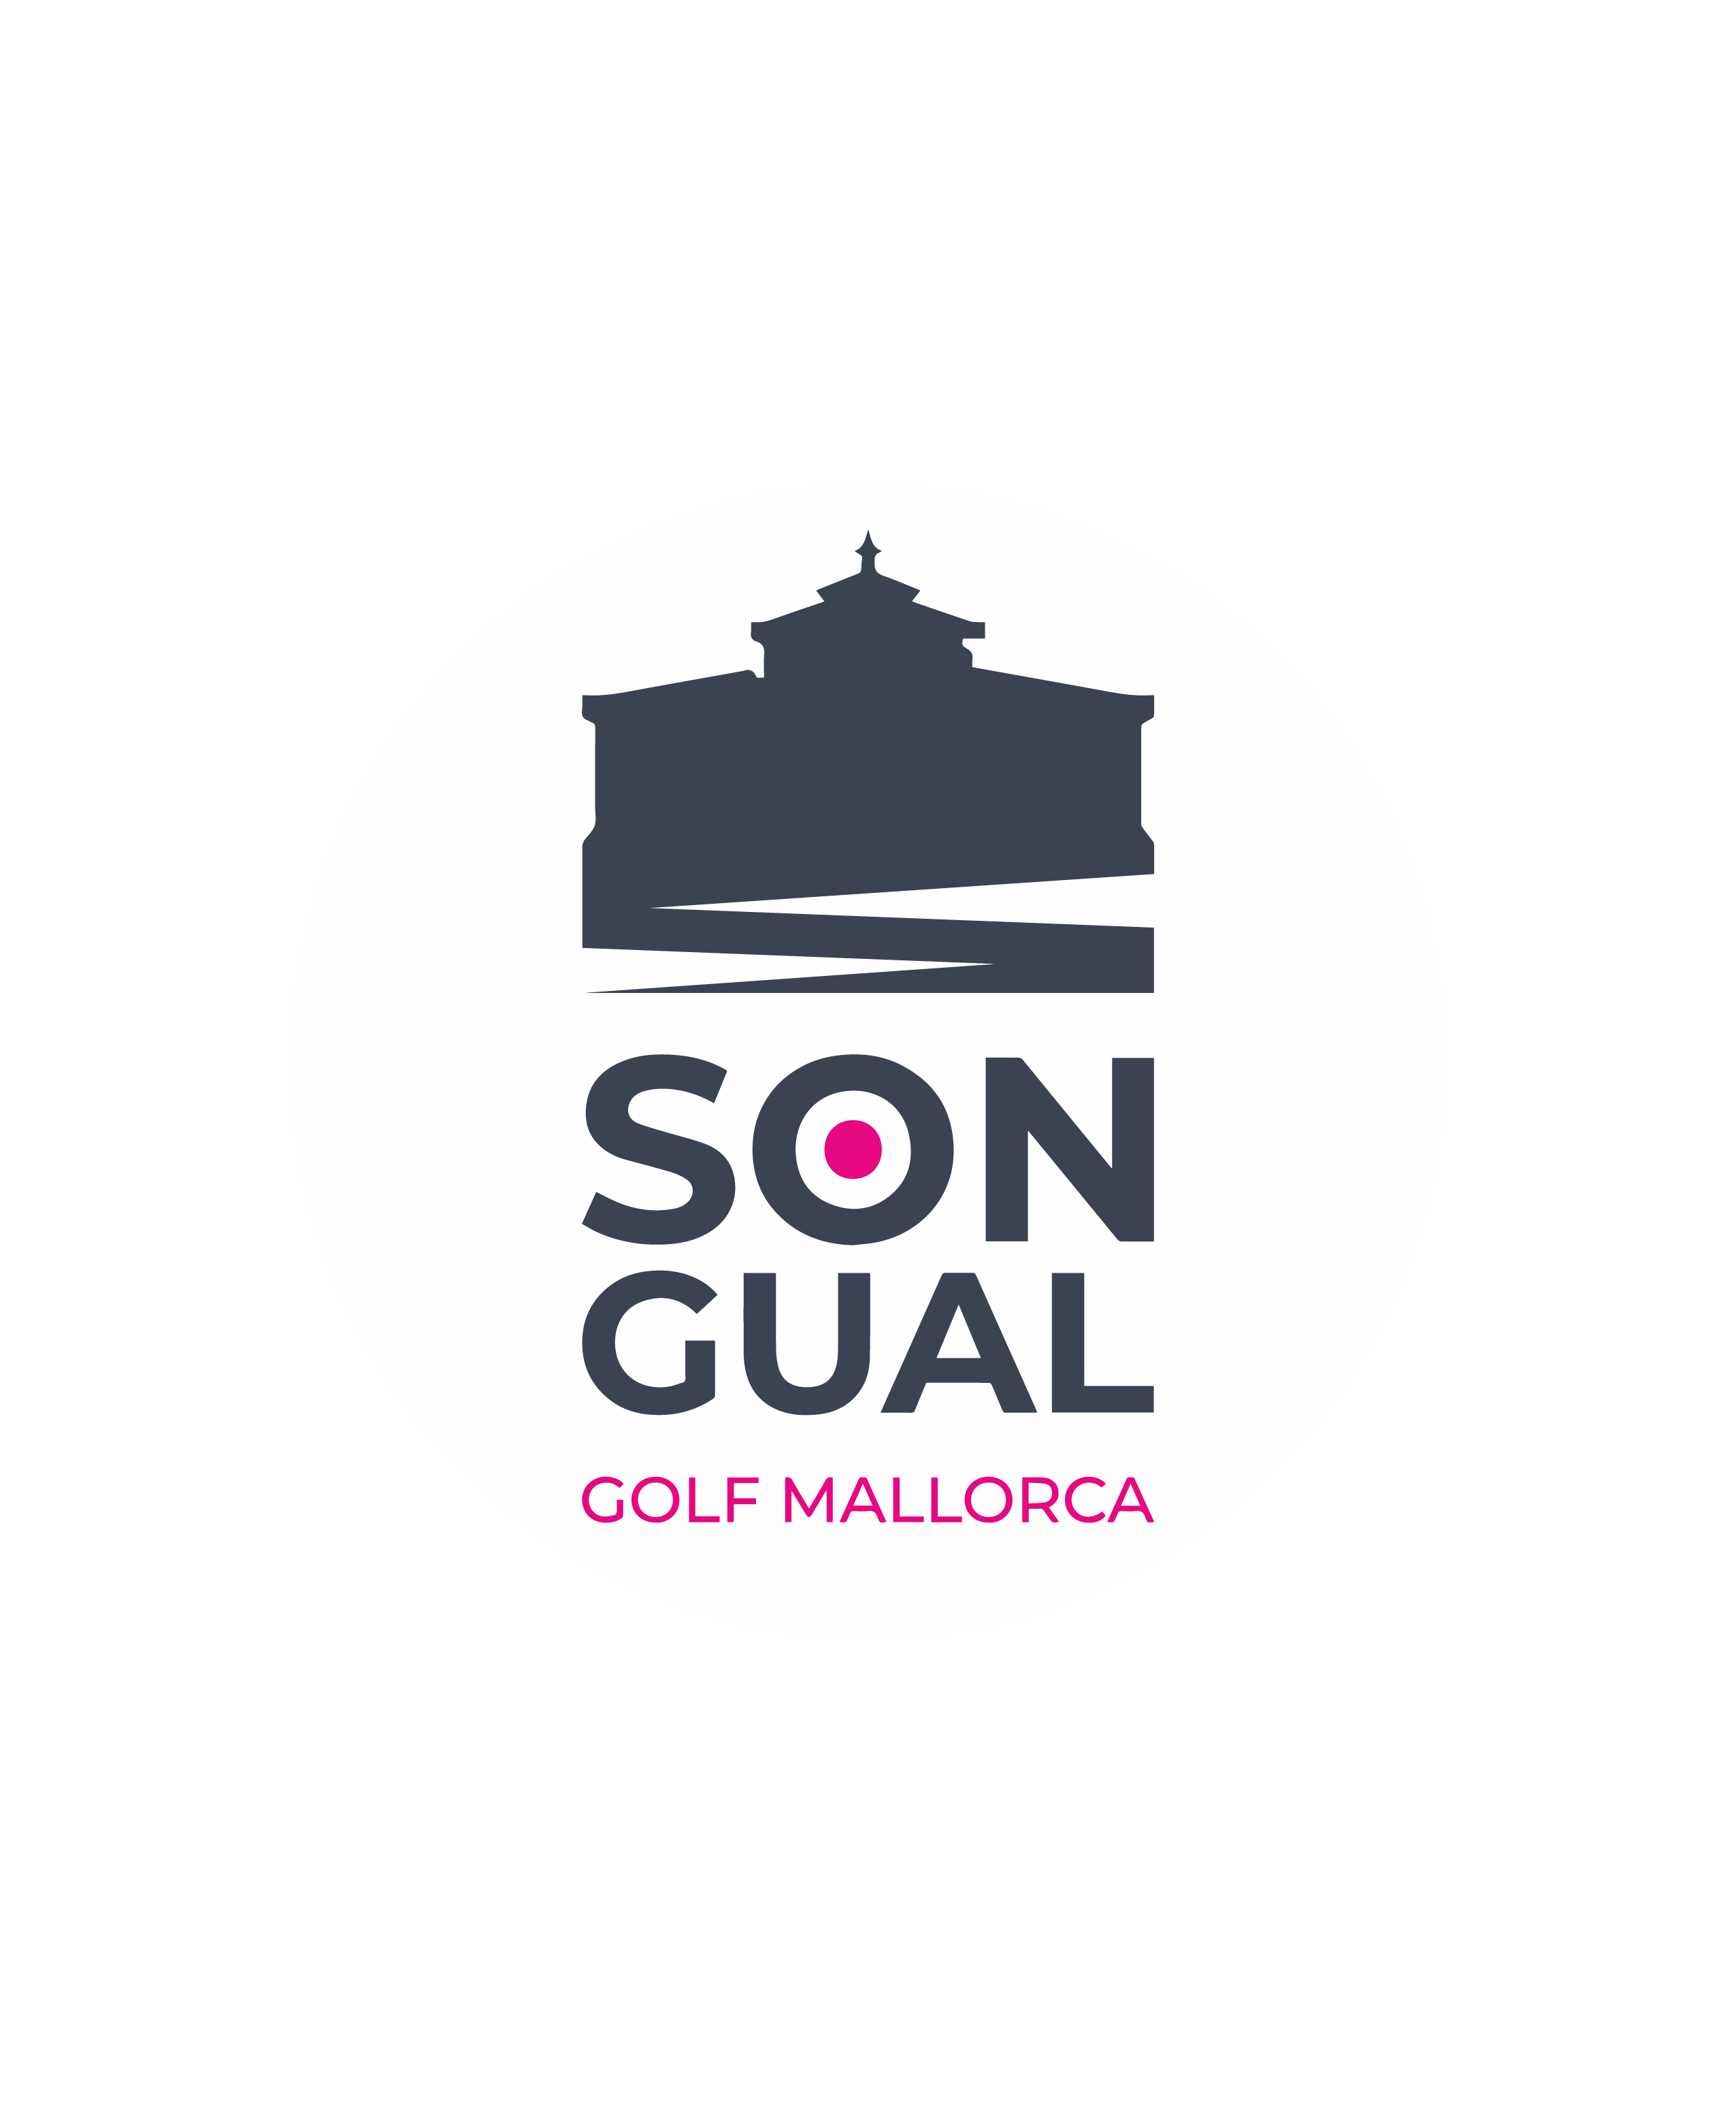 Golf Son Gual Mallorca